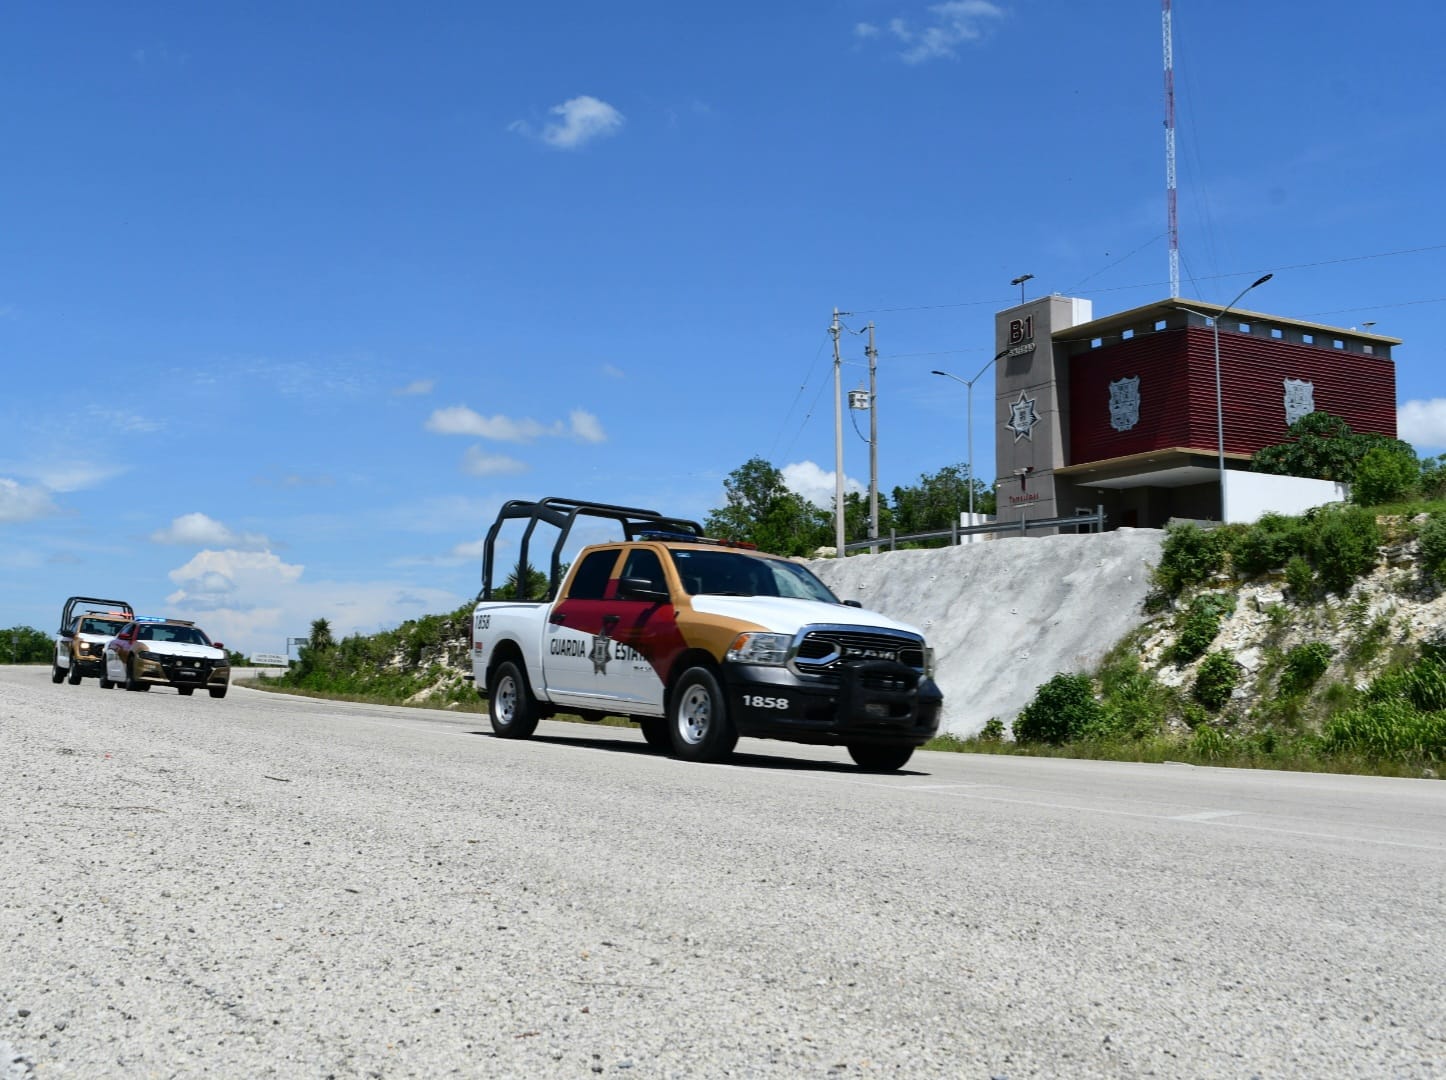 Cuenta Operativo Héroes Paisanos con tres rutas de seguridad en Tamaulipas